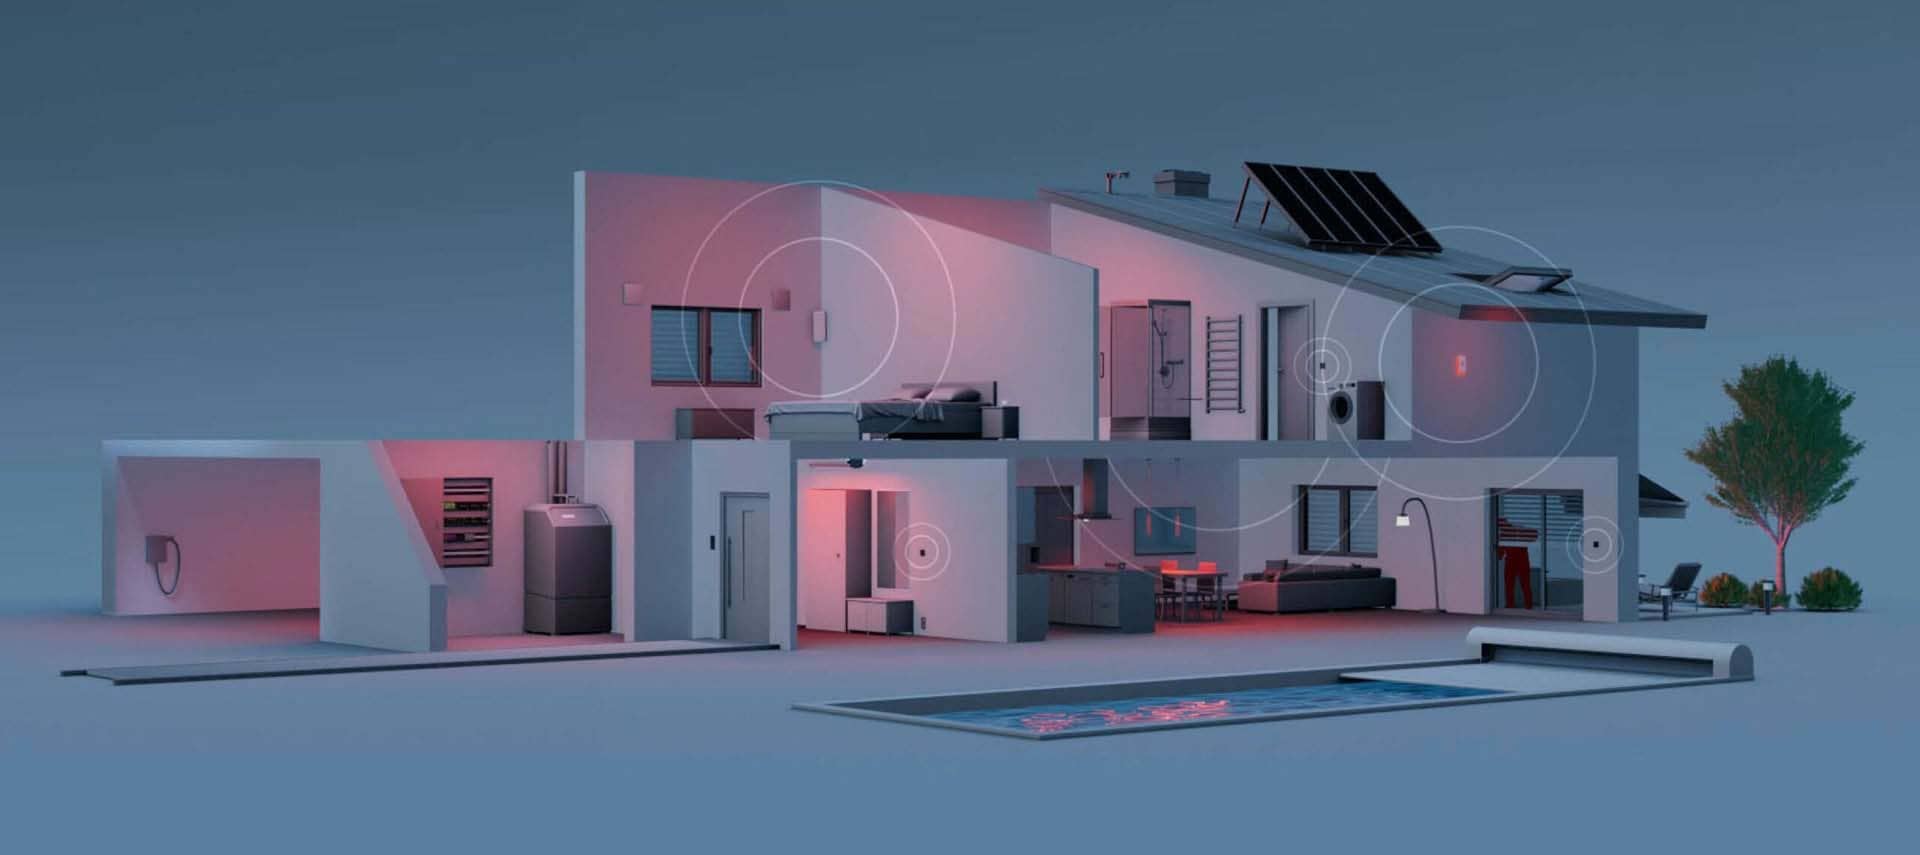 Hausdarstellung in 3D